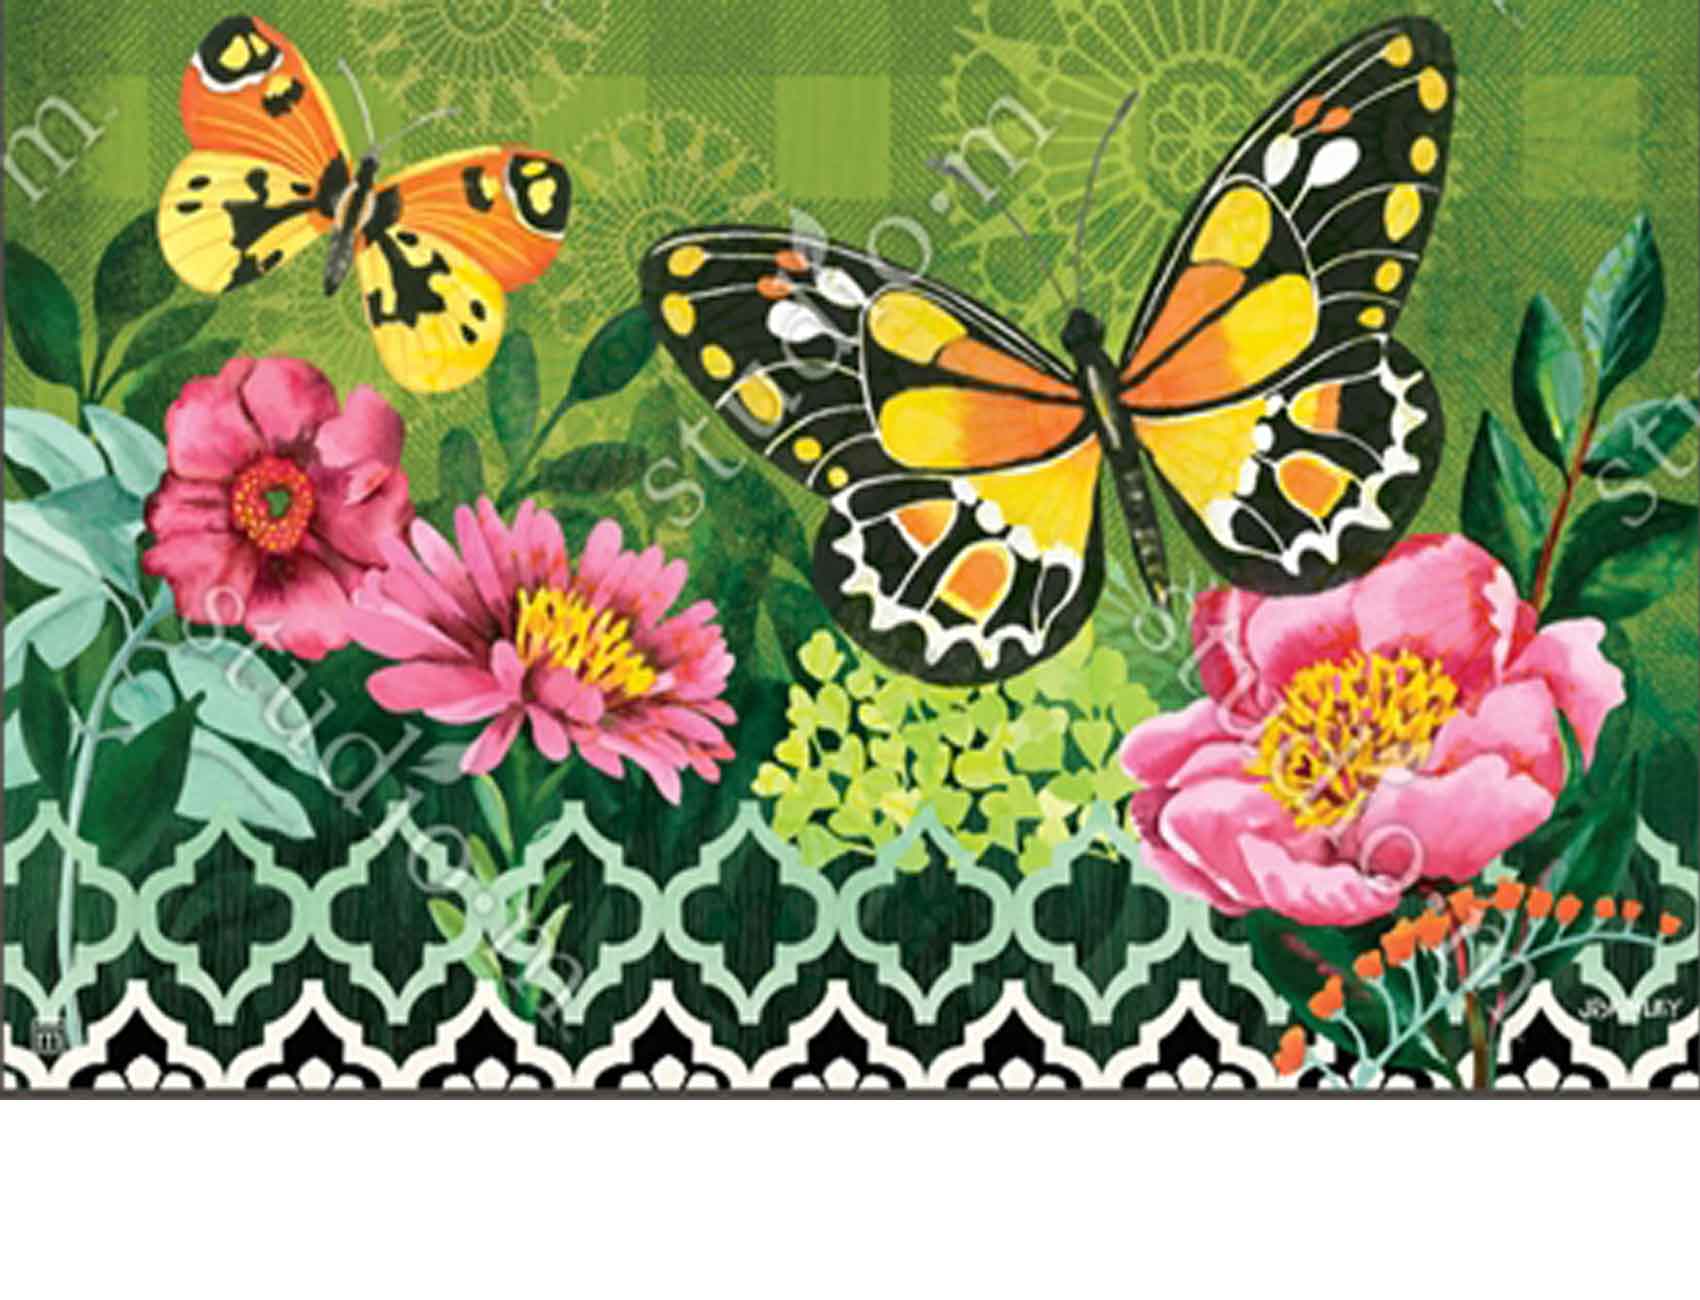 Briarwood Lane Butterflies and Poppies Spring Doormat Floral Indoor Outdoor 18 x 30